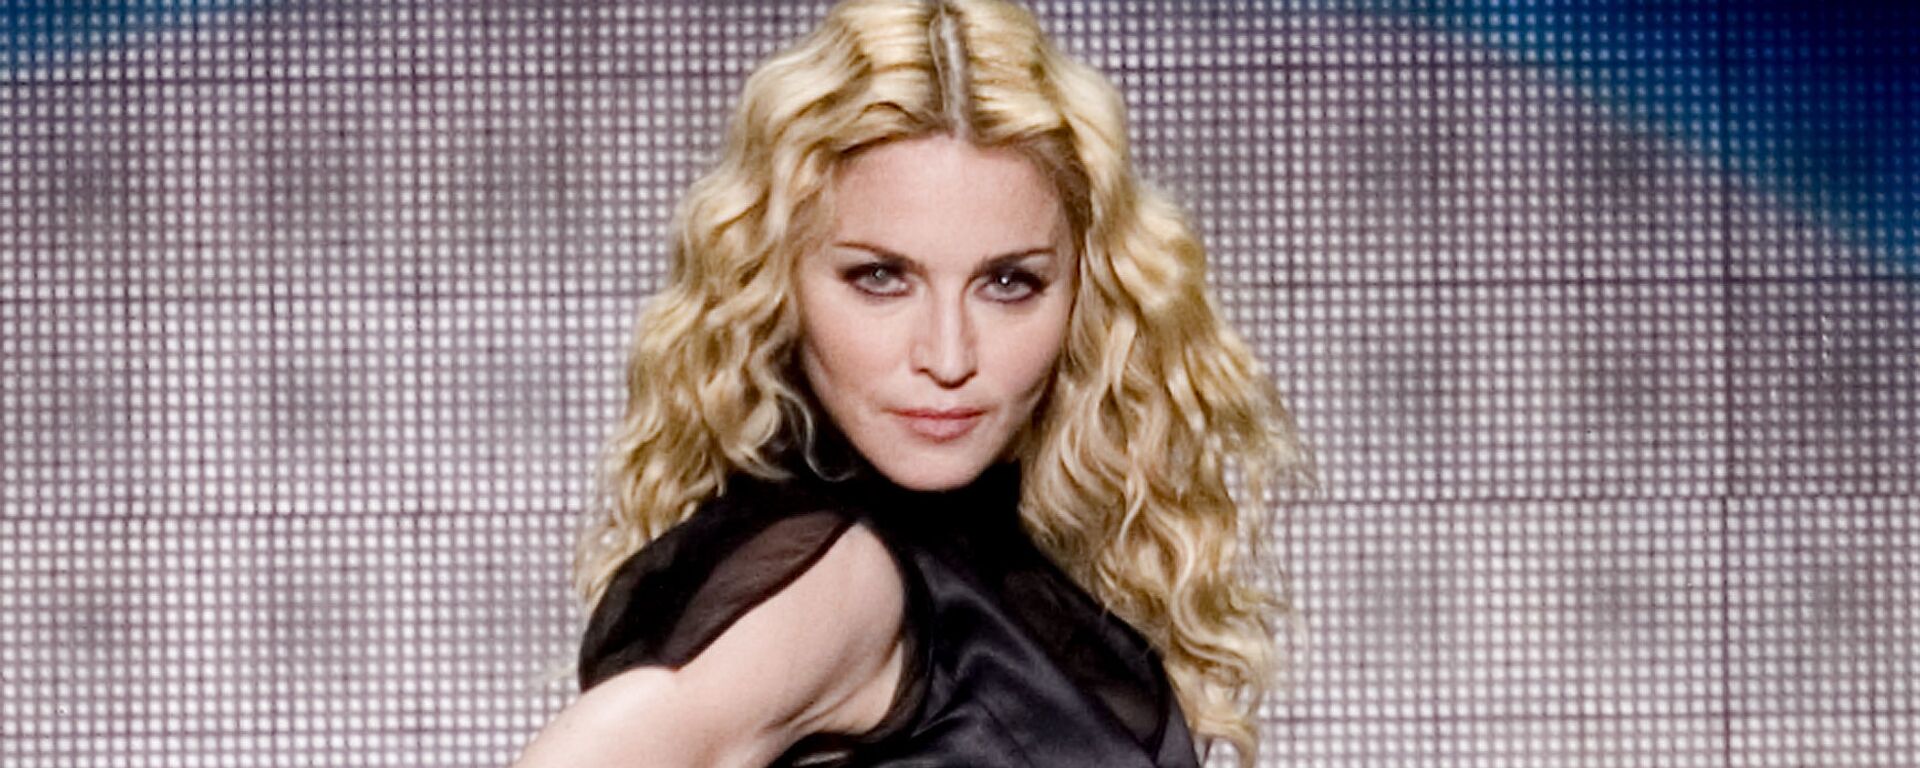 Американская певица Мадонна во время выступления в Мексике, 2008 год - Sputnik Mundo, 1920, 30.03.2021